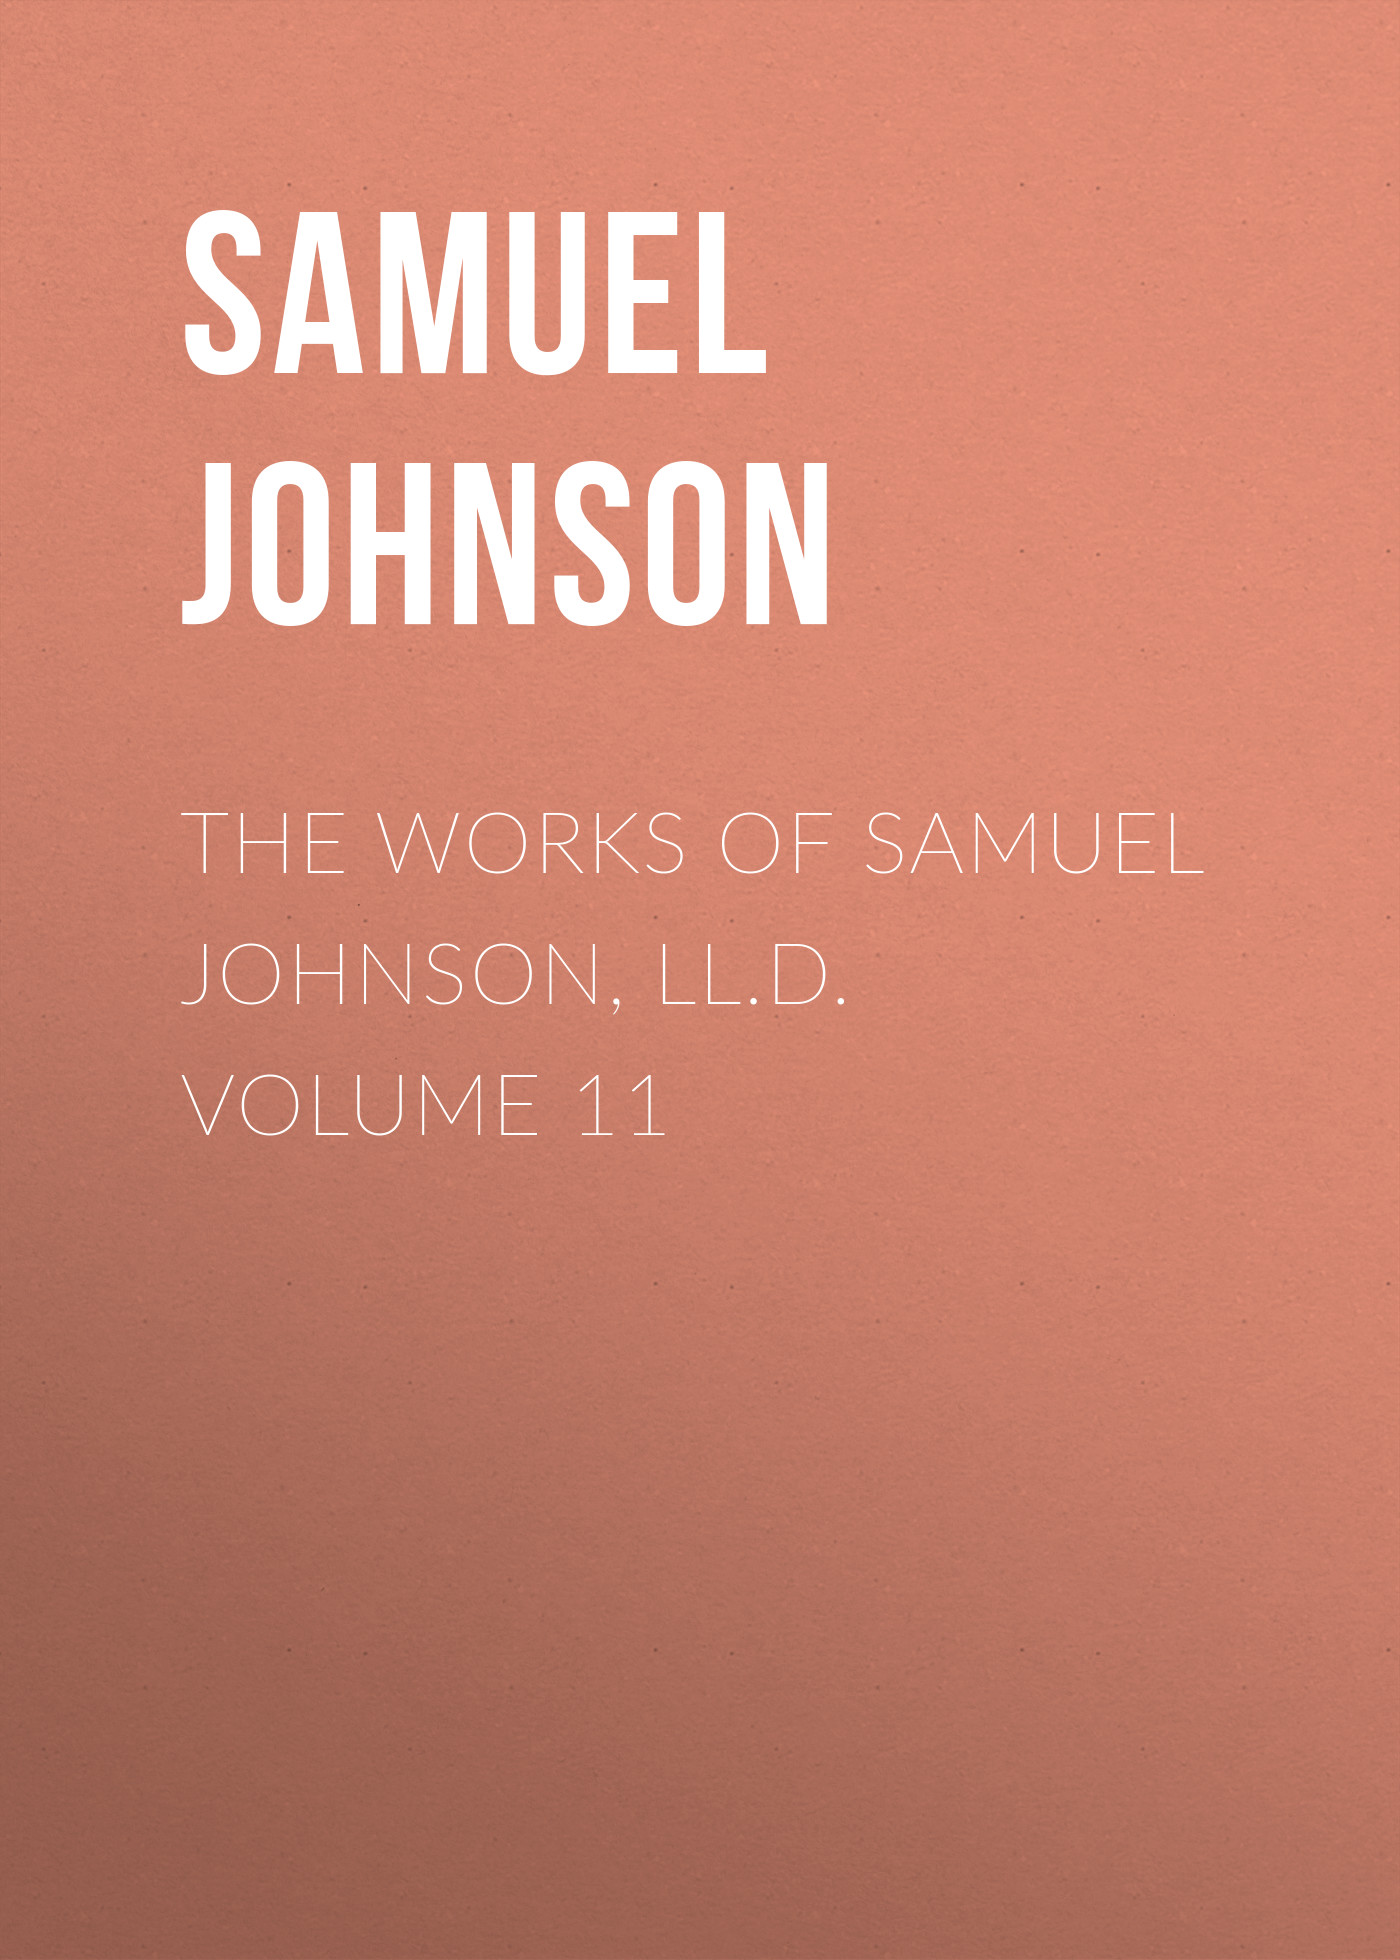 Книга The Works of Samuel Johnson, LL.D. Volume 11 из серии , созданная Samuel Johnson, может относится к жанру Зарубежная классика, Литература 18 века, Зарубежная старинная литература. Стоимость электронной книги The Works of Samuel Johnson, LL.D. Volume 11 с идентификатором 36092565 составляет 0 руб.